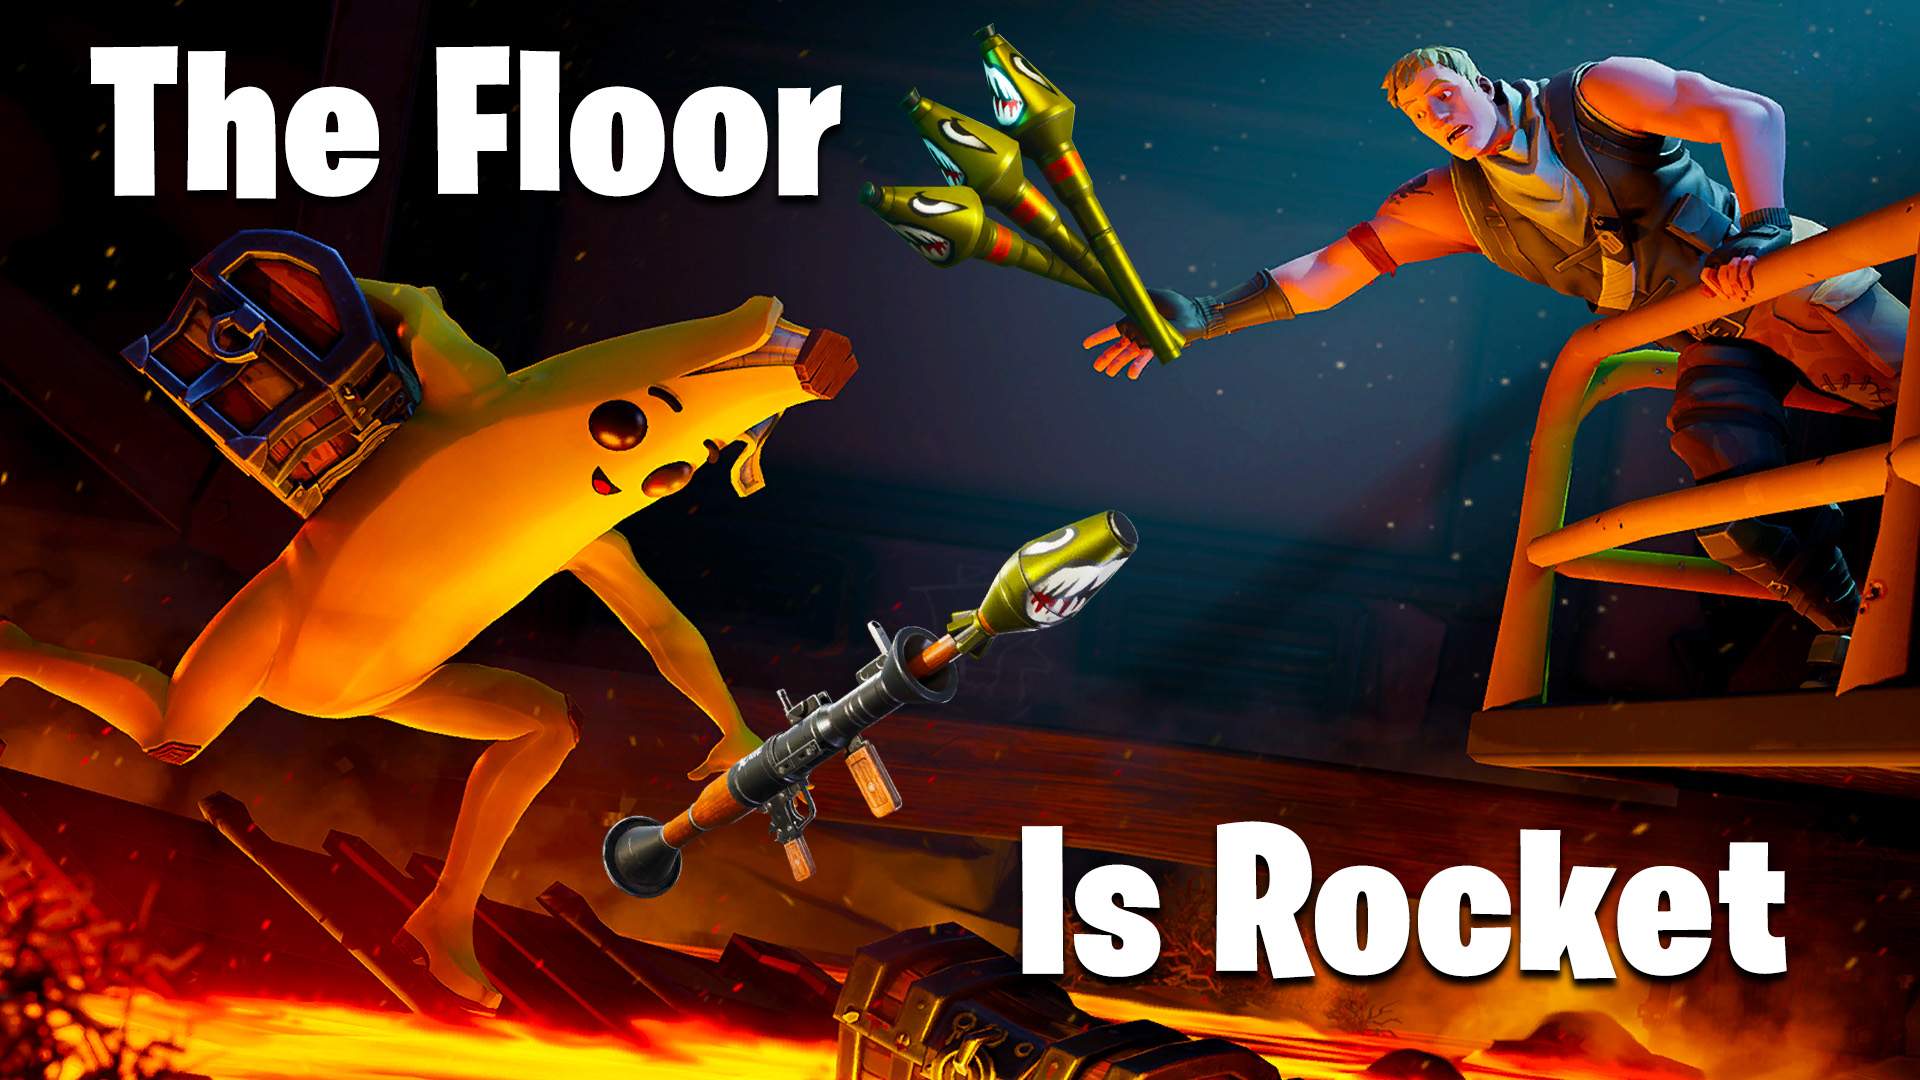 THE FLOOR IS ROCKET